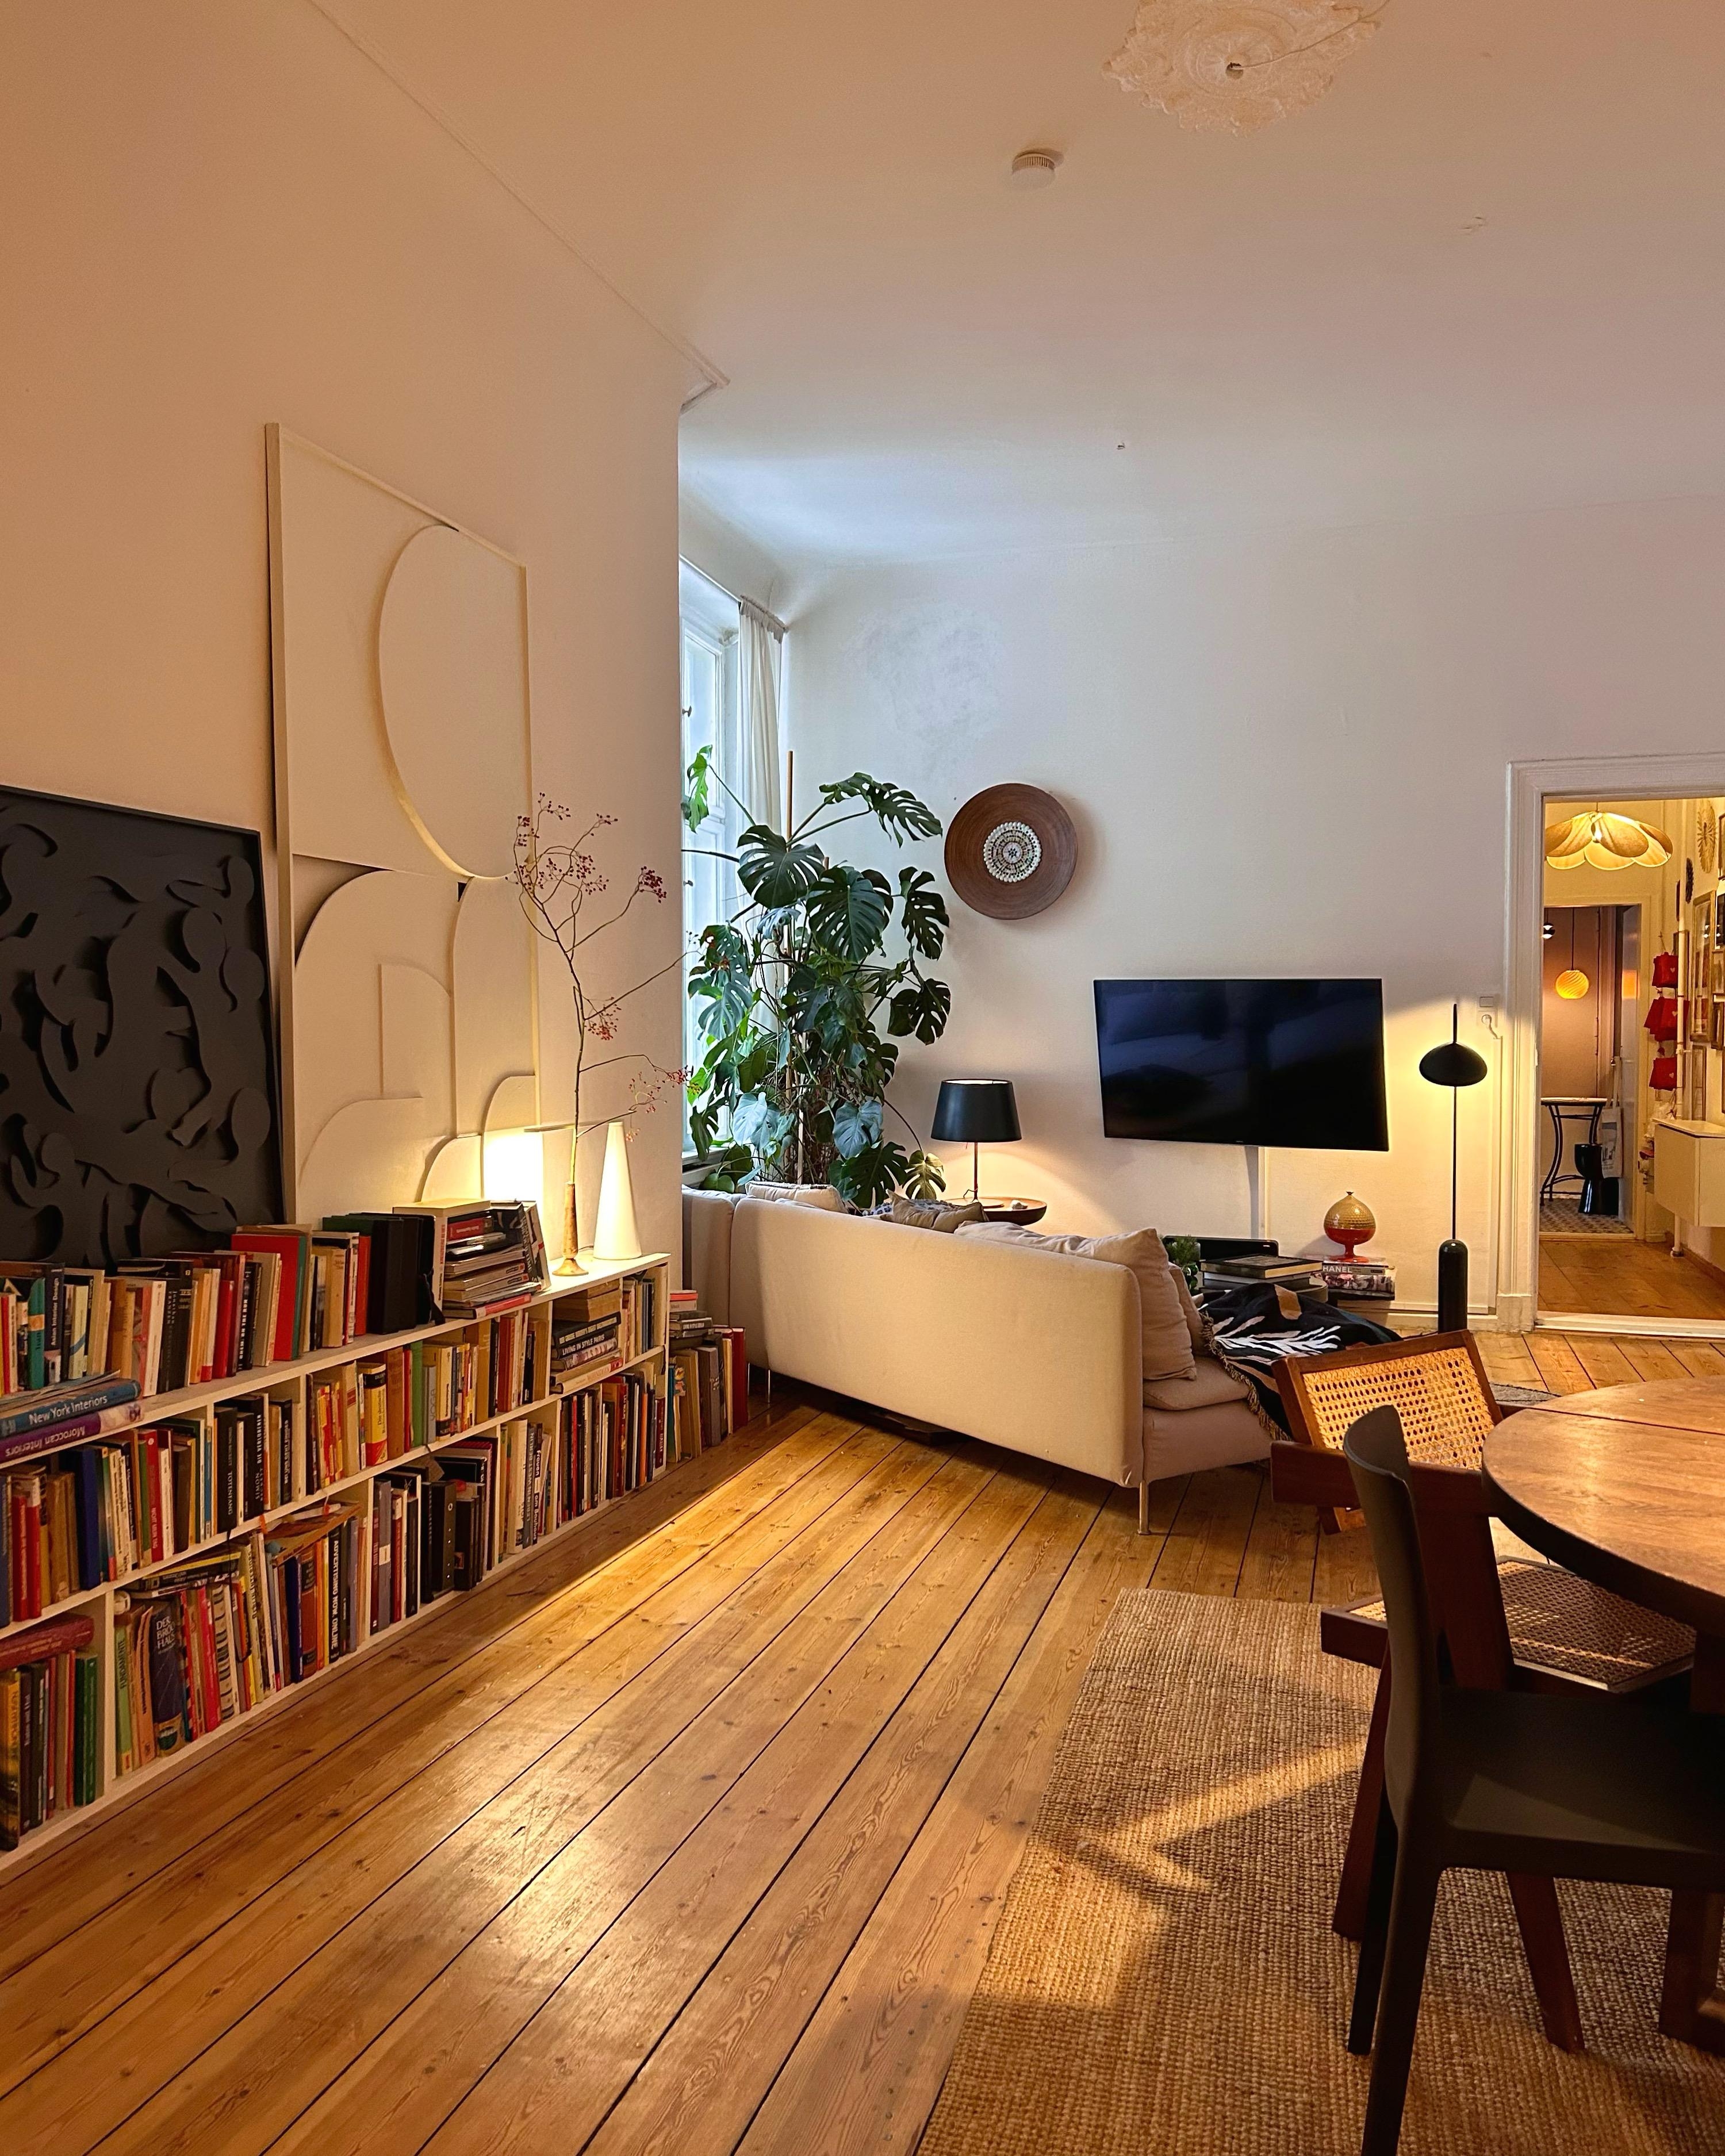 Ein letzter Blick ohne 🎄. Bis später 🚗! #wohnzimmer #couch #kunst #bücherregal #altbau #holzboden